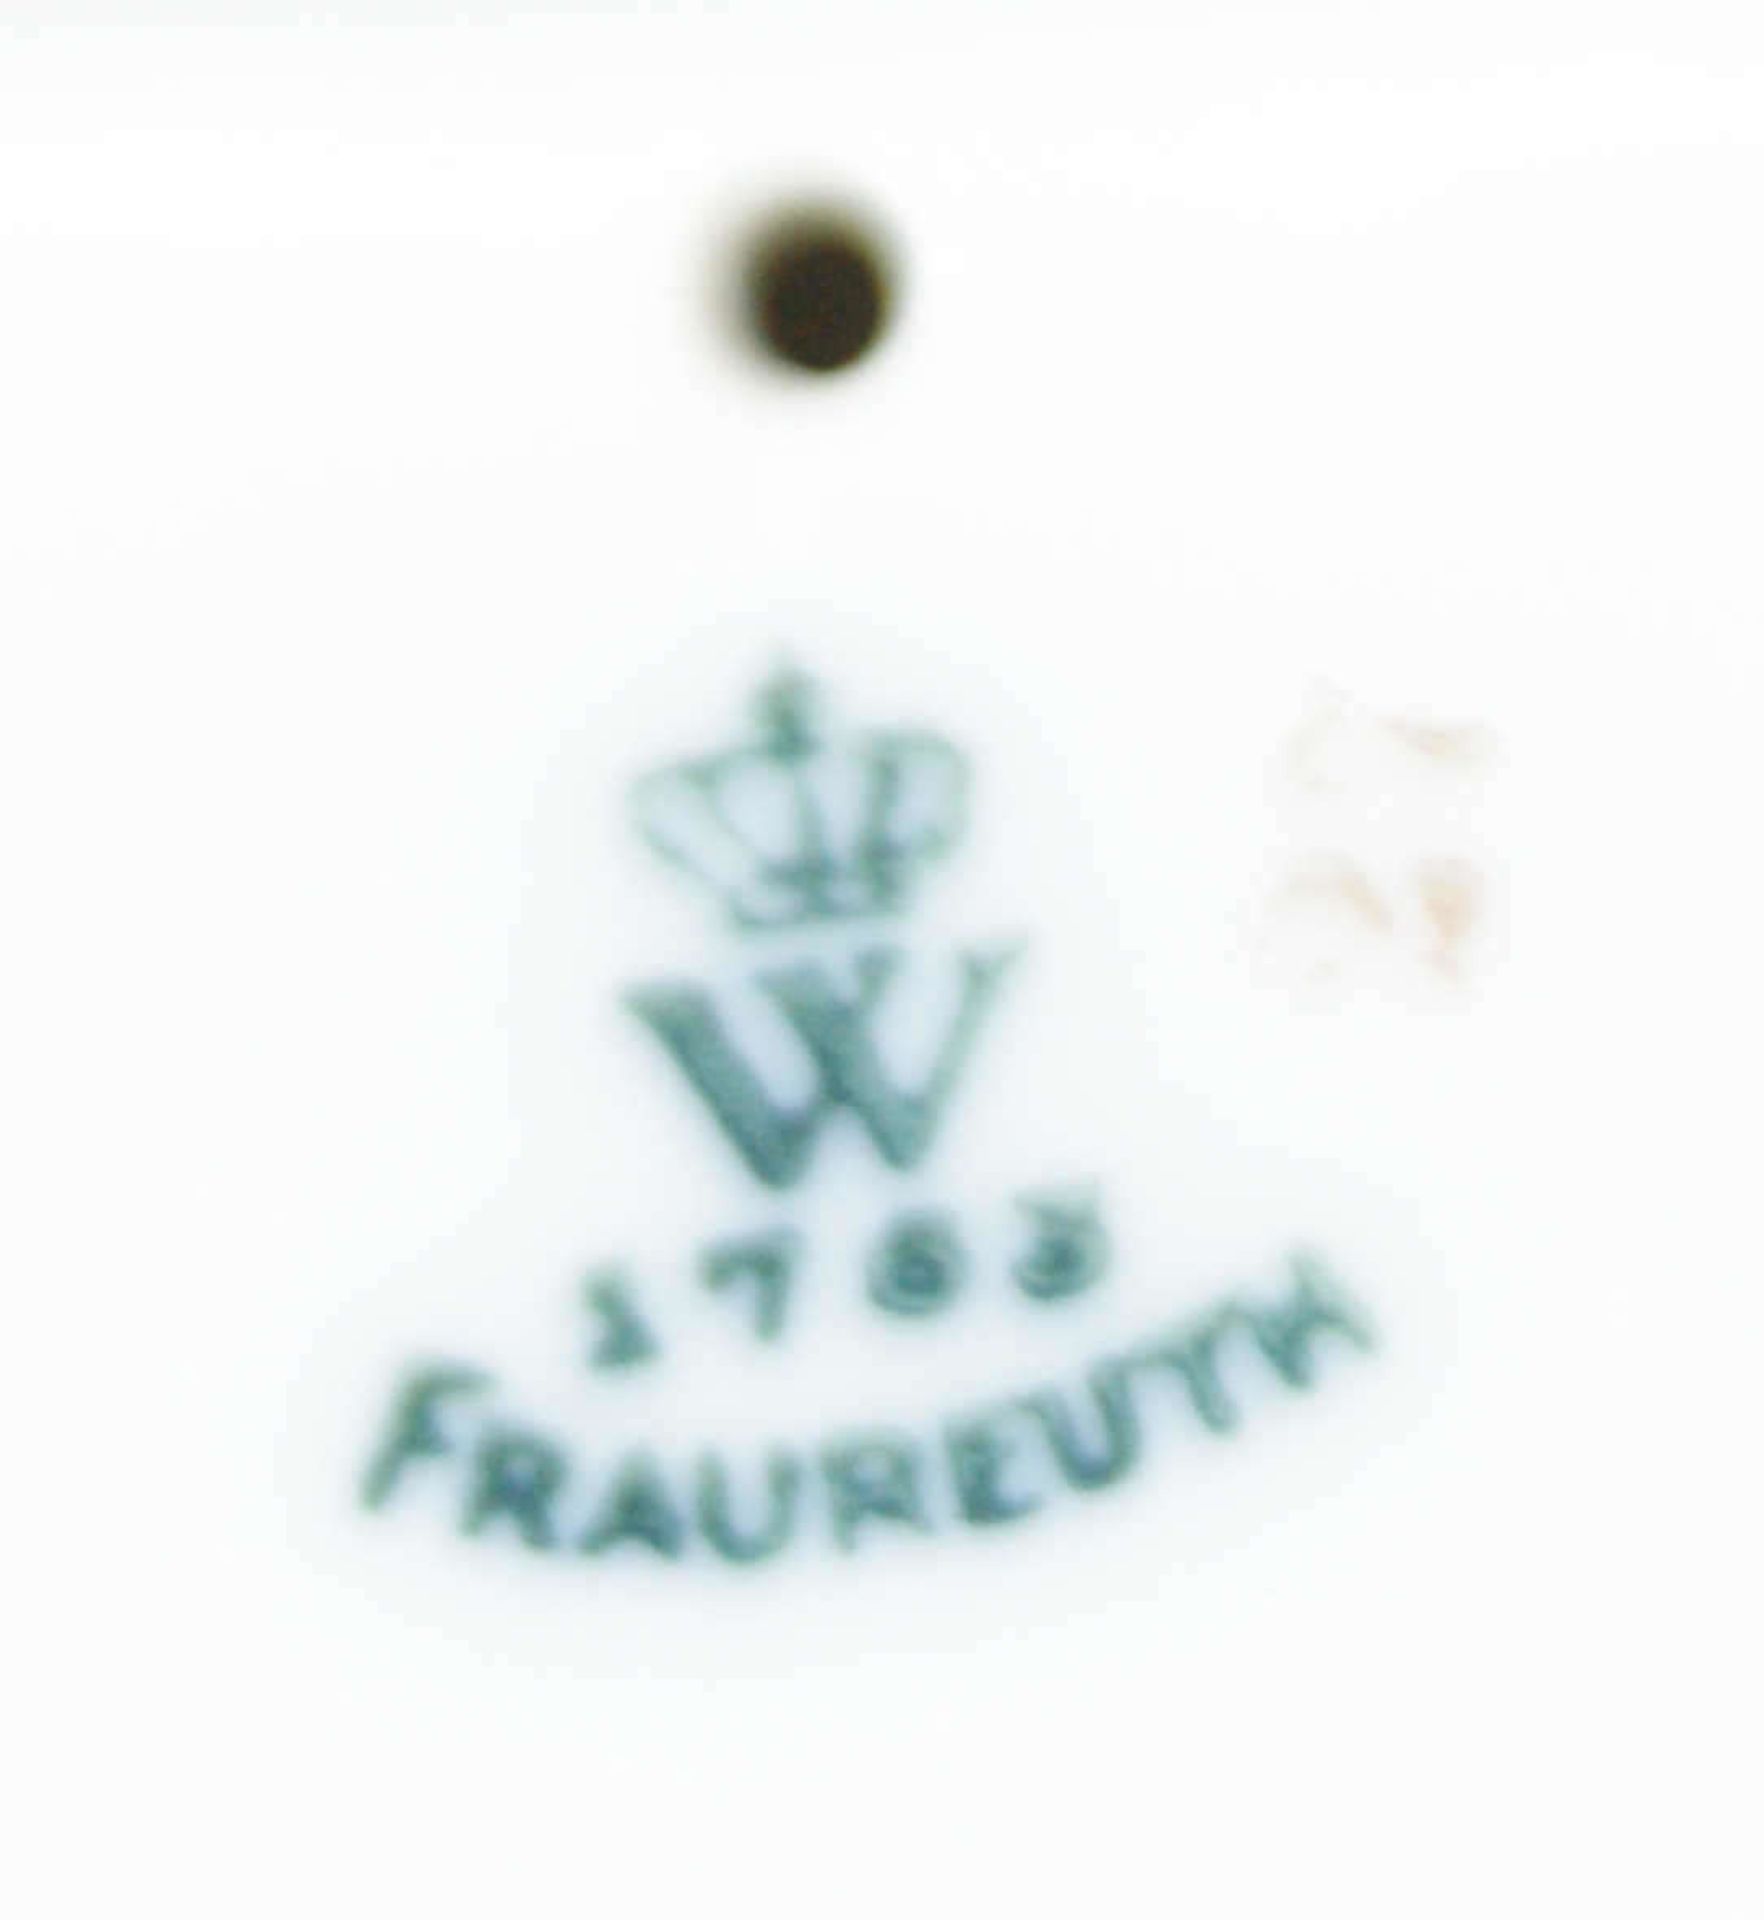 Fraureuth Porzellanfigur "gute Freunde".Jugendstilfigur mit Gold ausstaffiert. Am Stand gemarkt - Bild 4 aus 4